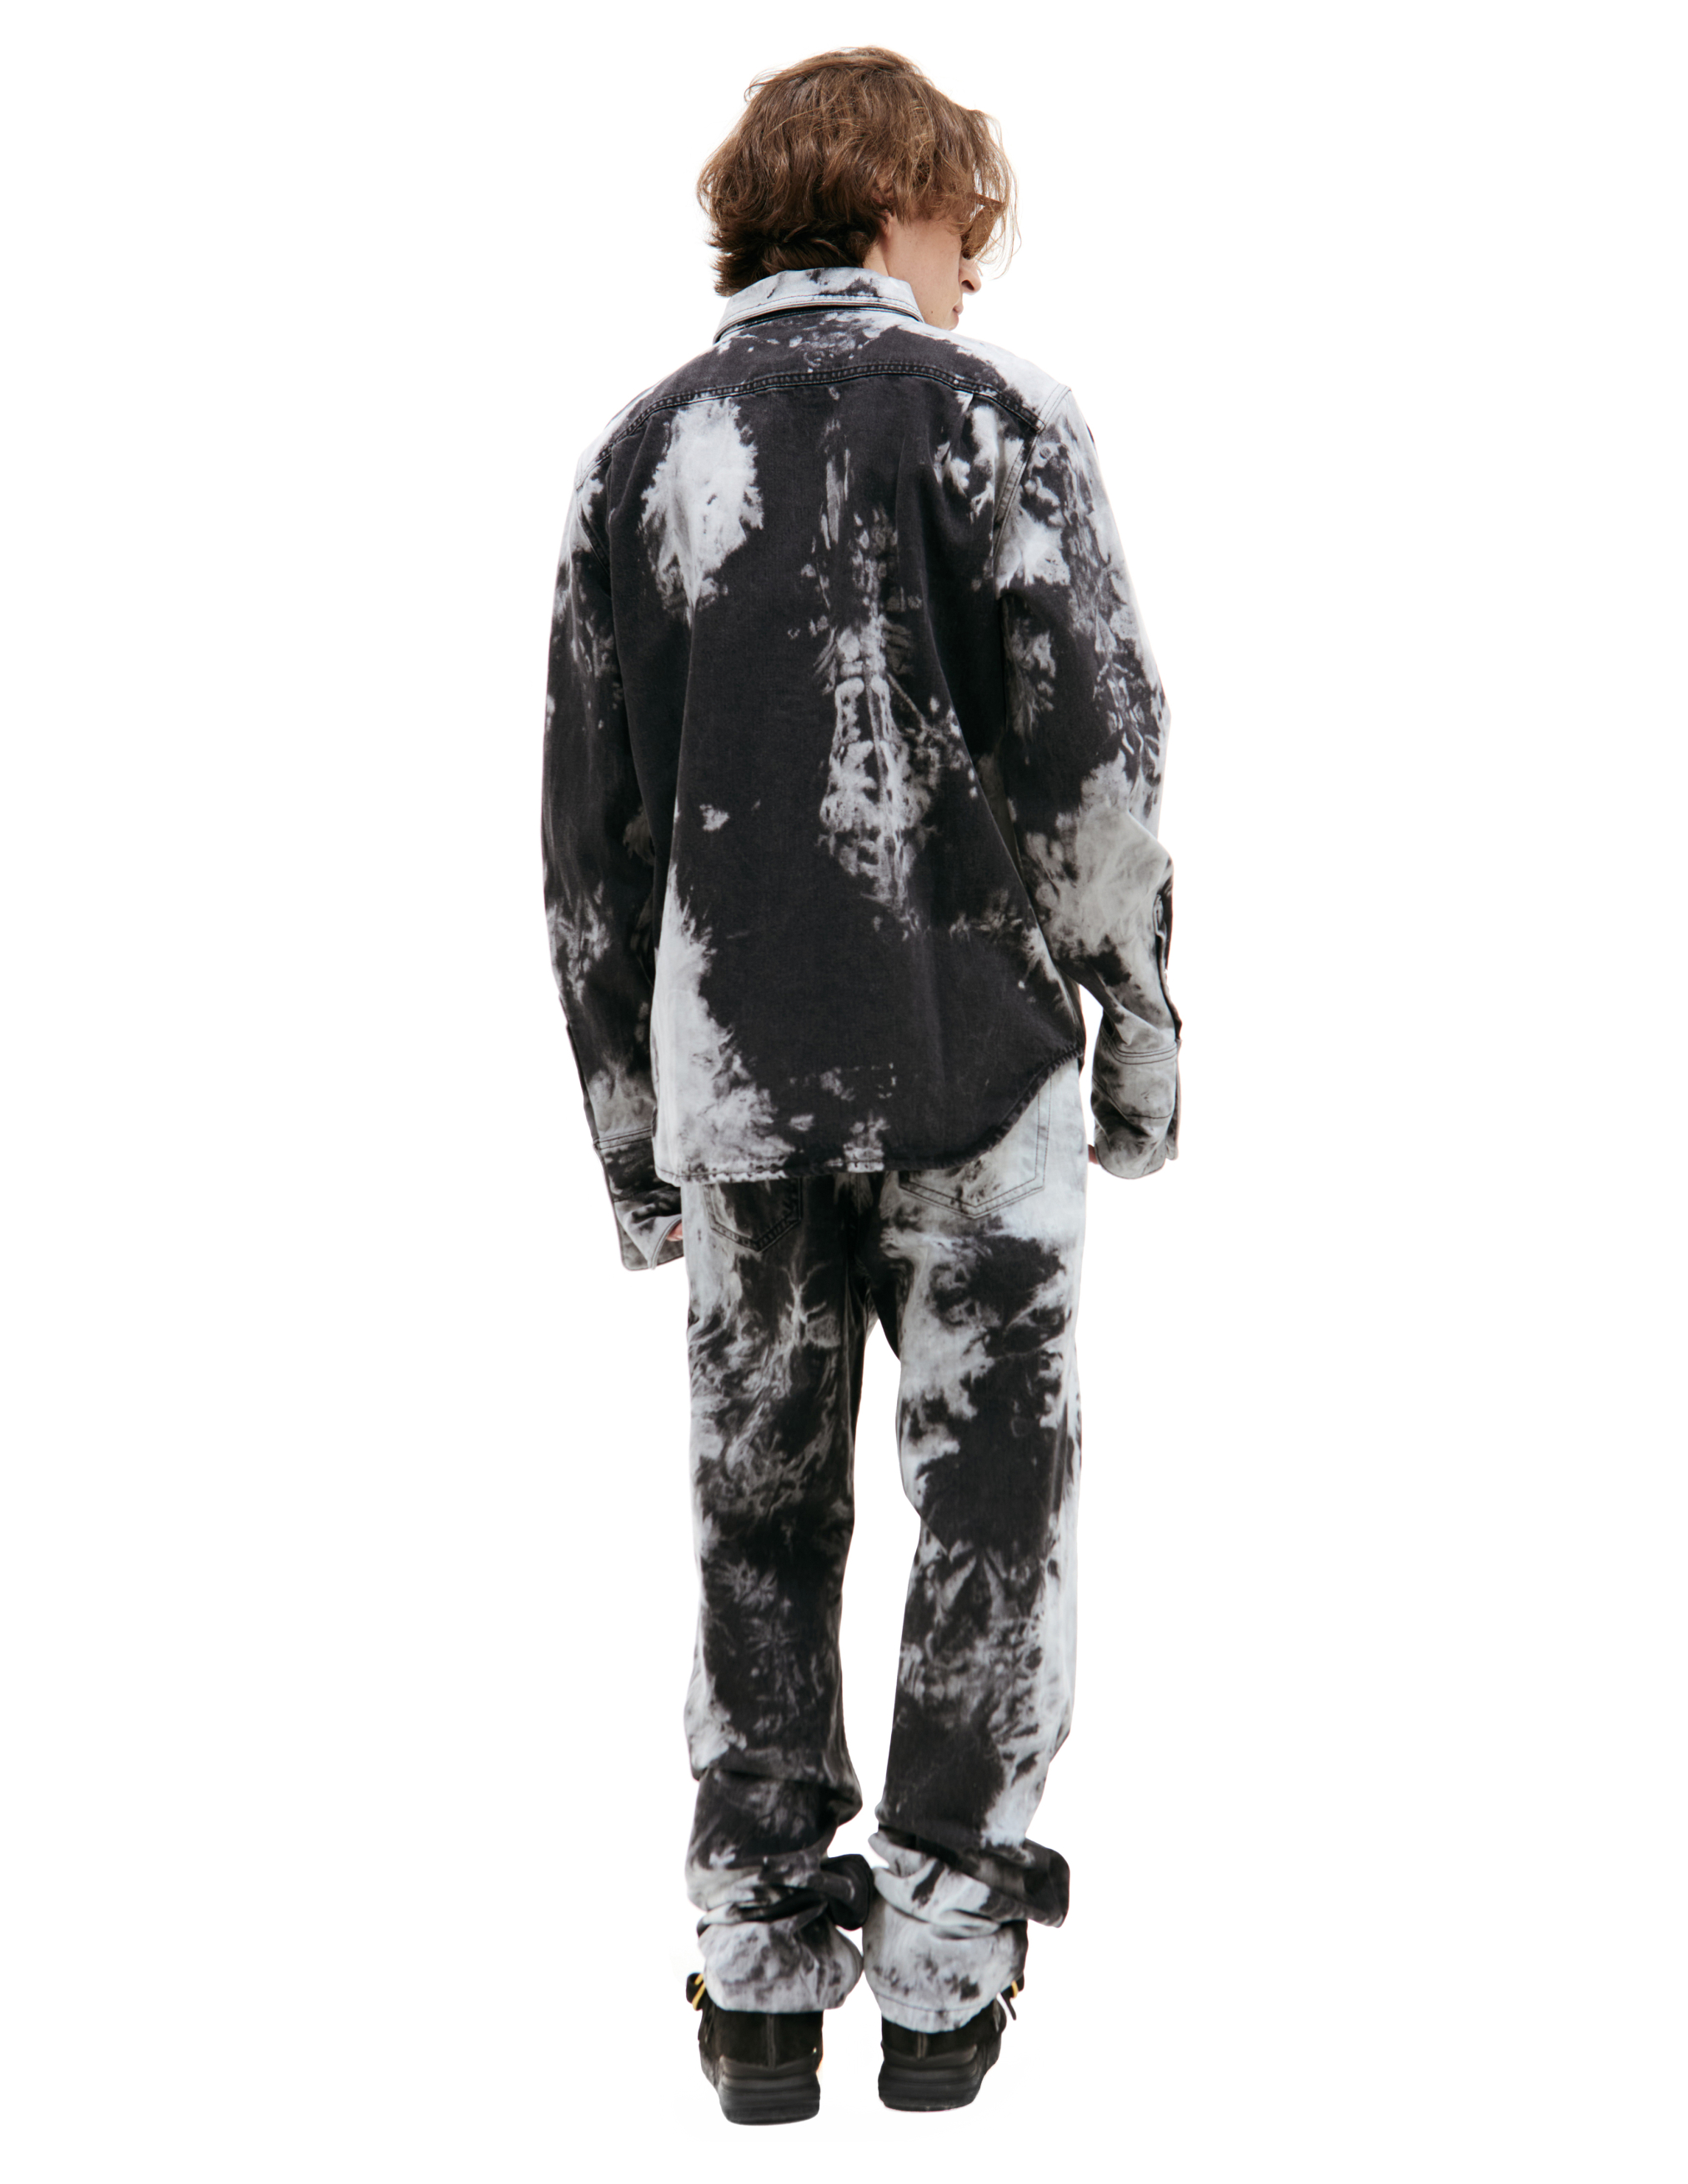 Джинсовая рубашка с тай-дай эффектом LOUIS GABRIEL NOUCHI 0555/D012/032, размер L;XL 0555/D012/032 - фото 3